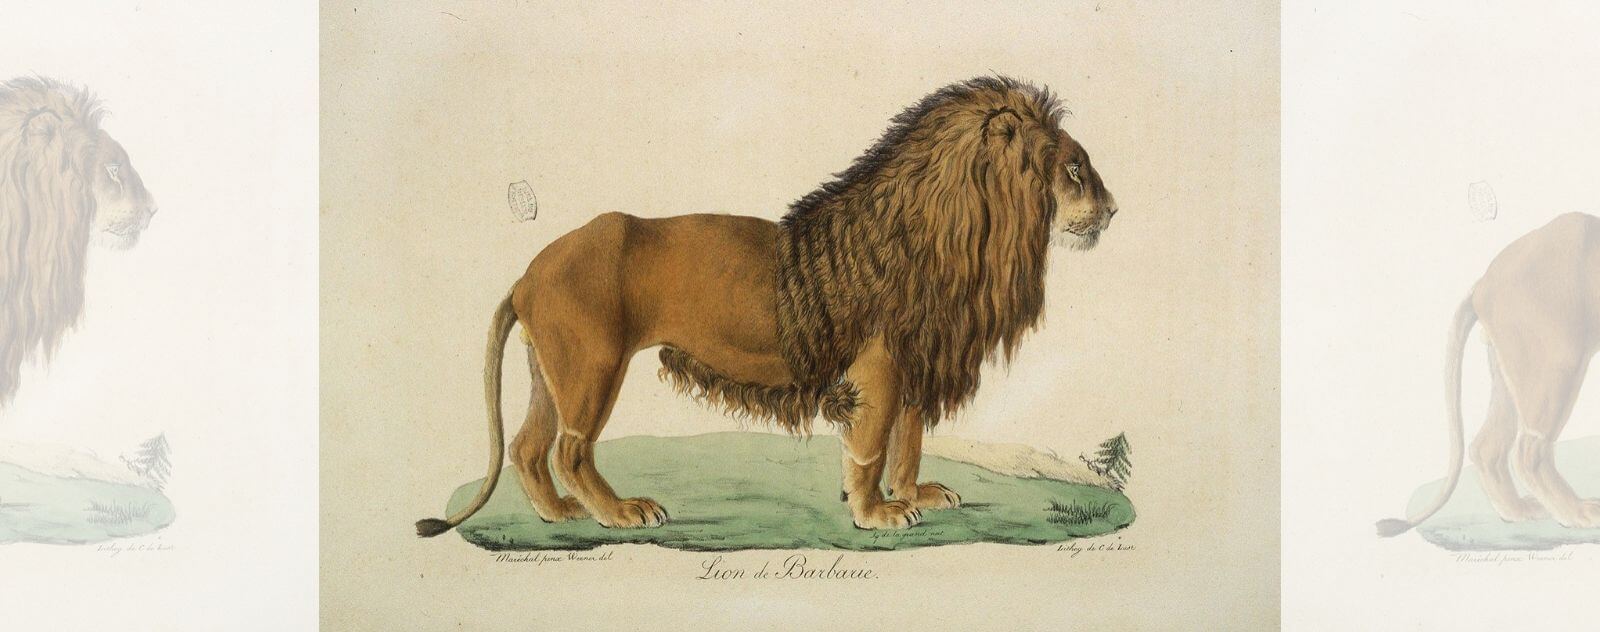 Dessin du Lion de Barbarie d'Afrique du Nord (Panthera leo leo)